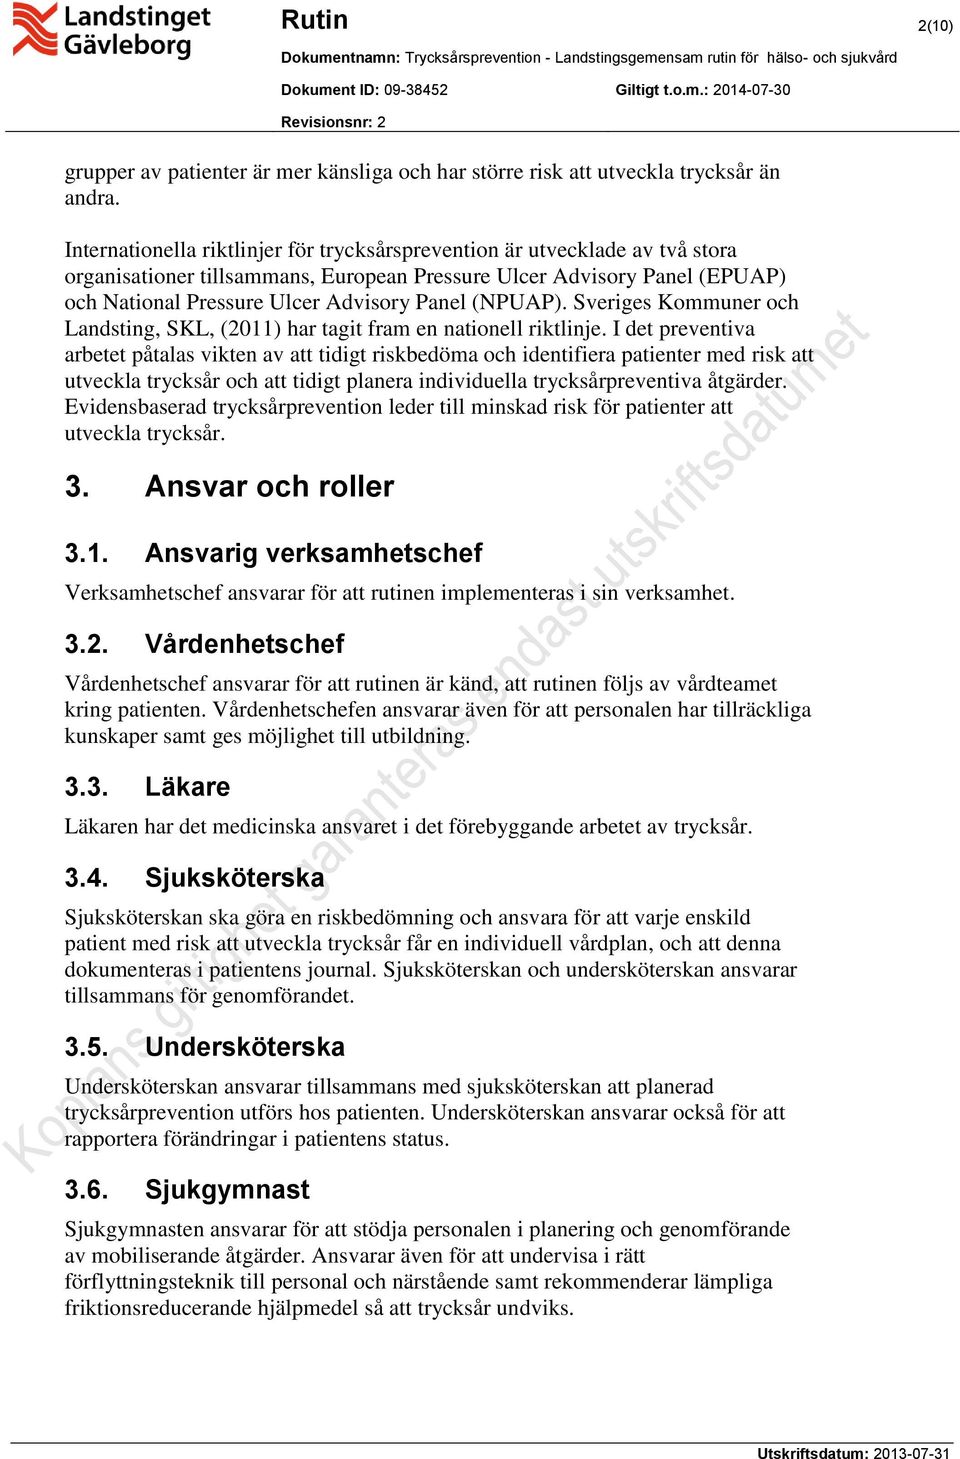 (NPUAP). Sveriges Kommuner och Landsting, SKL, (2011) har tagit fram en nationell riktlinje.